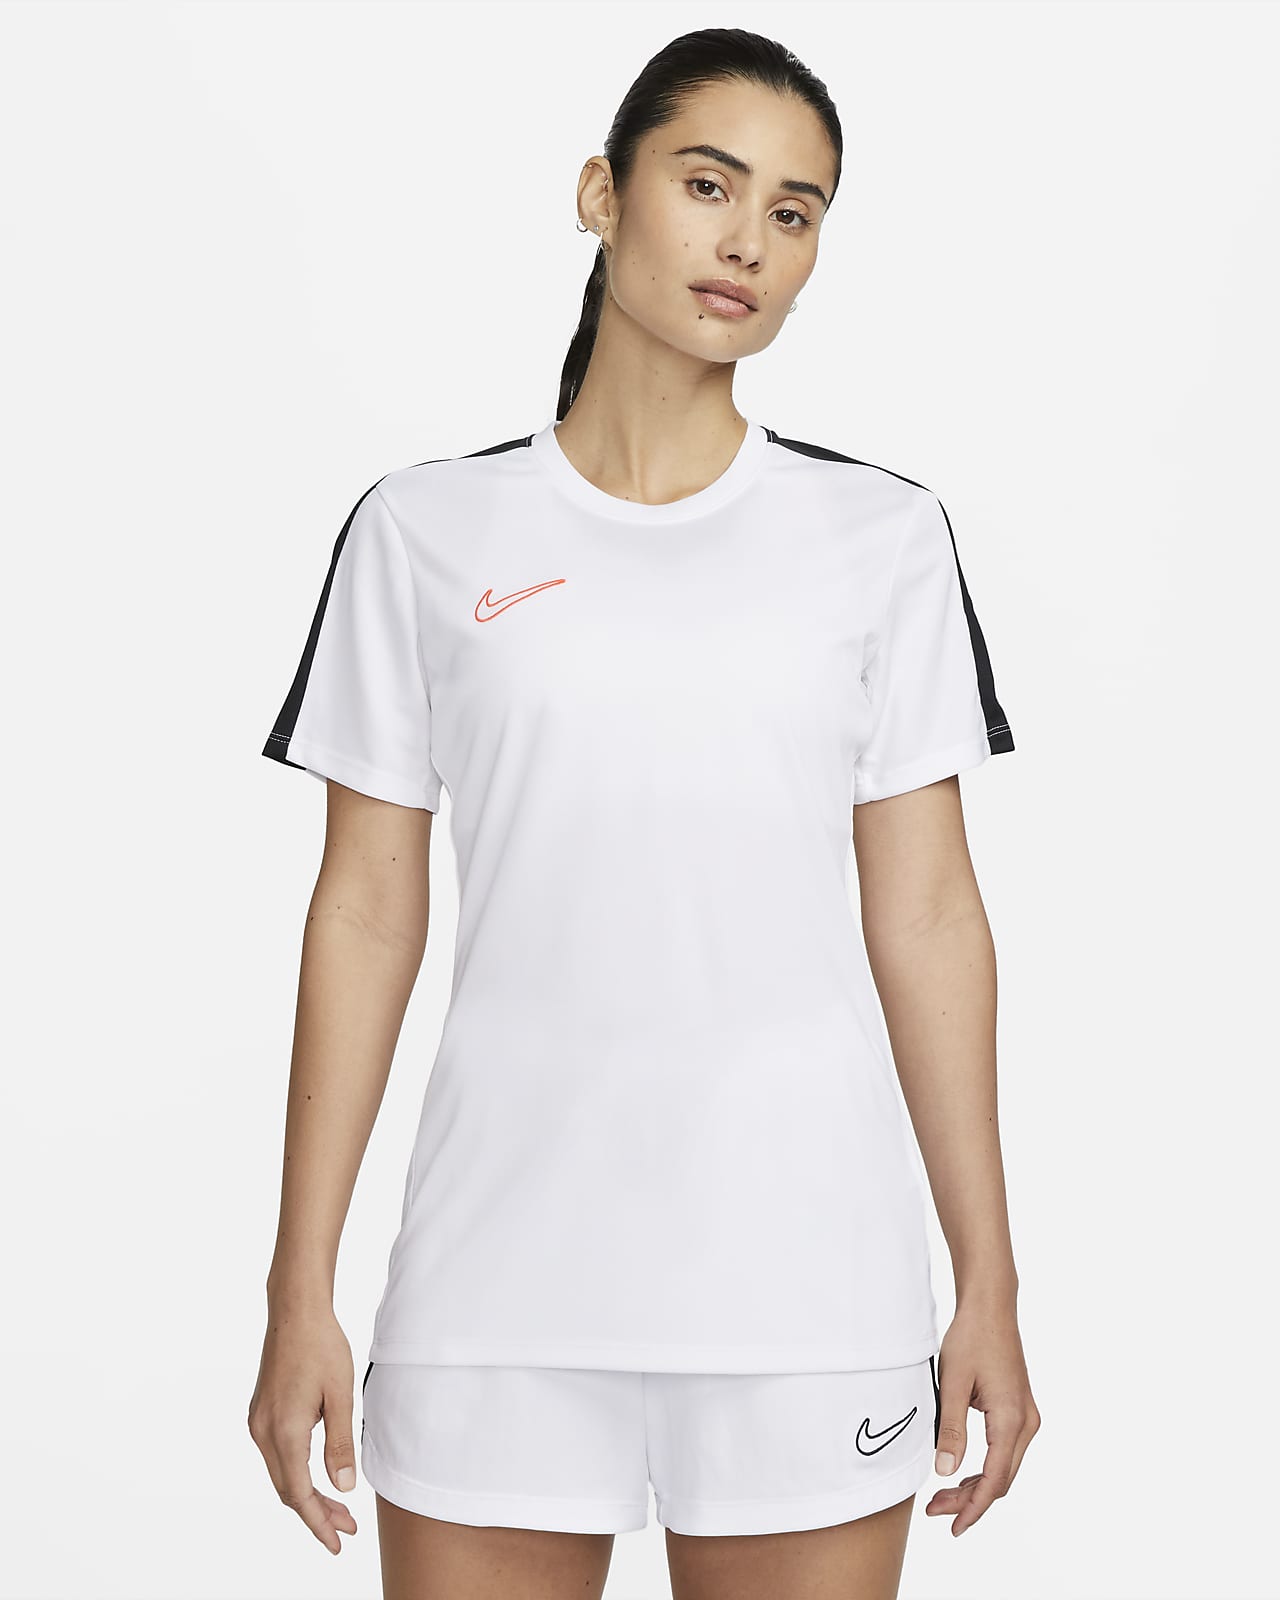 verbergen galop Verlenen Nike Dri-FIT Academy Women's Short-Sleeve Football Top. Nike LU